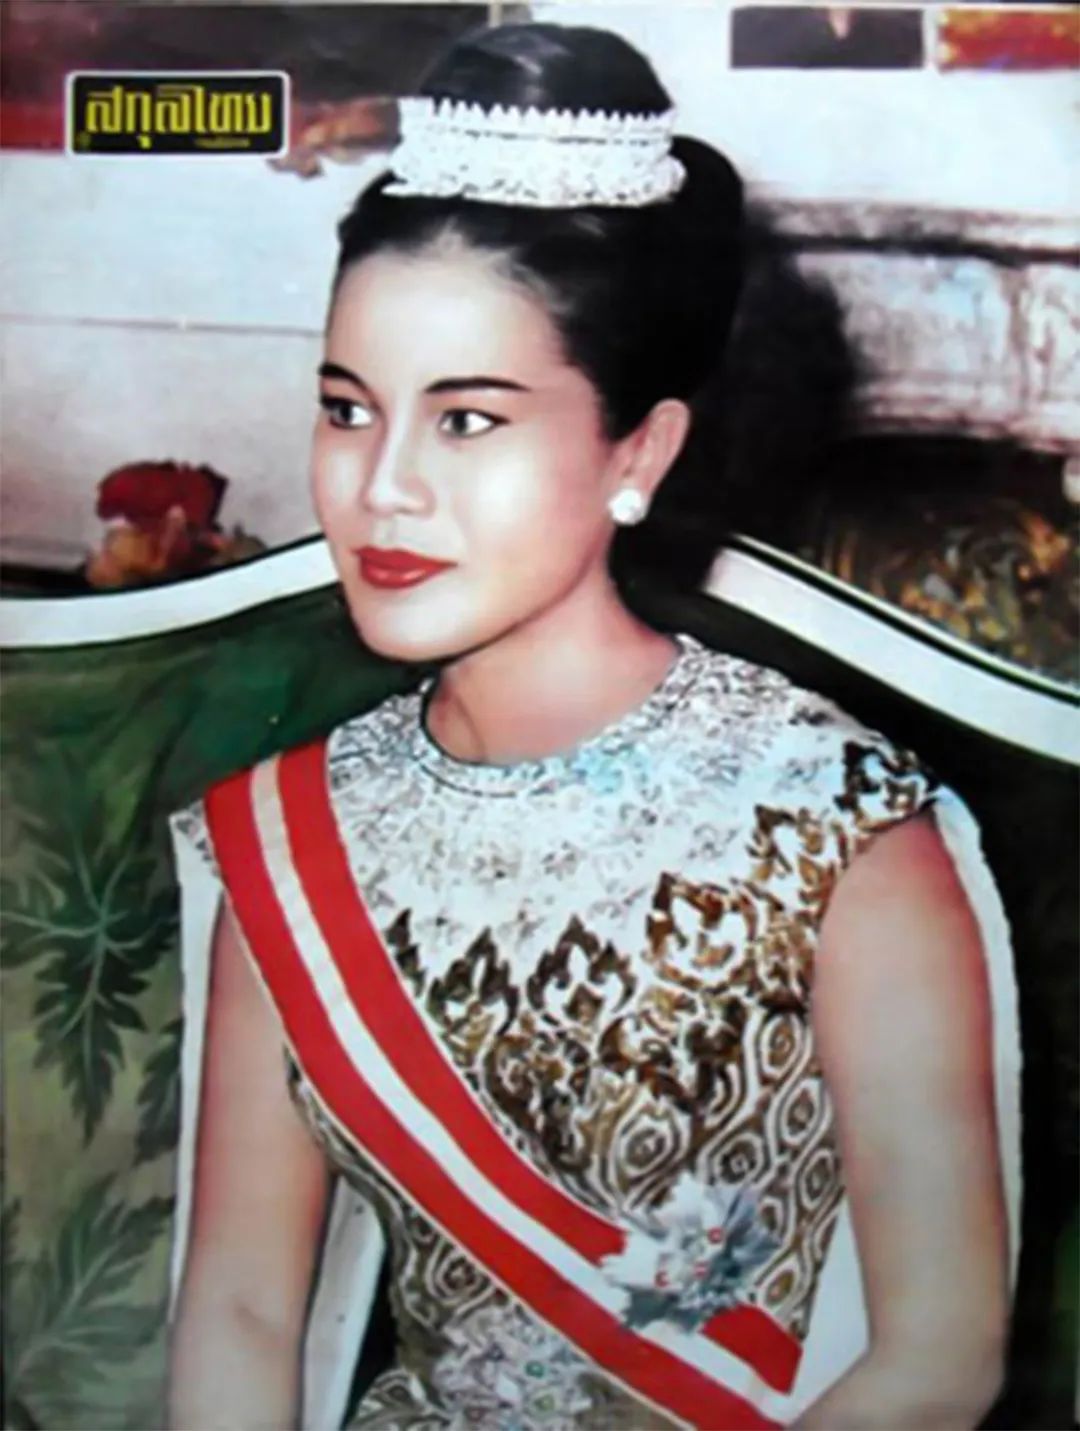 诗丽吉王后年轻的时候,特别喜欢戴一款流苏围兜项链,这是由王冠拆卸